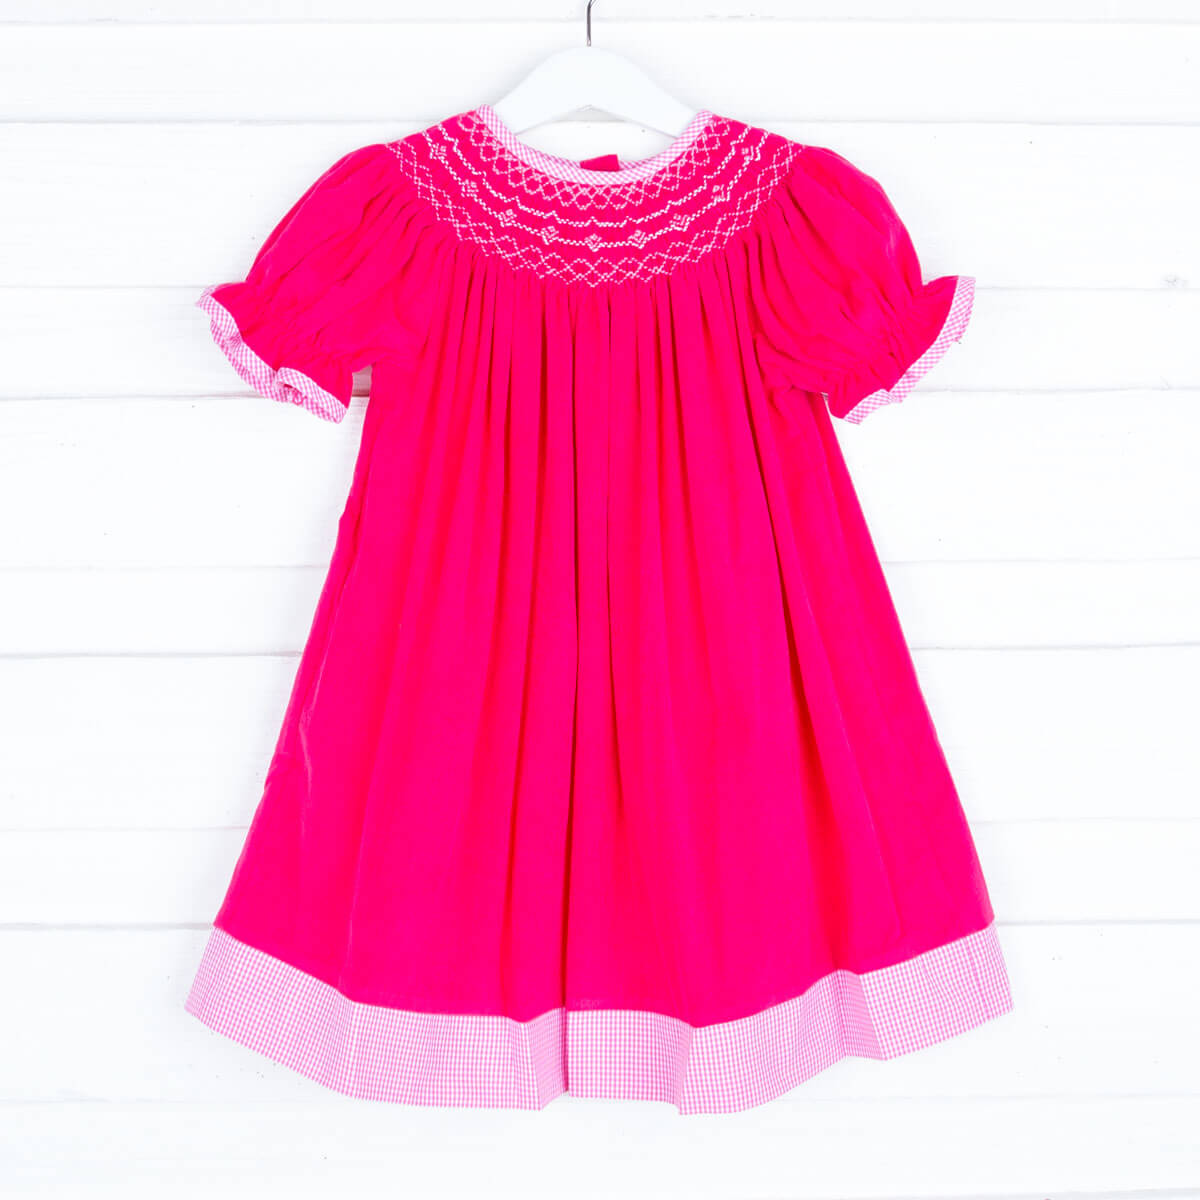 Smocked Bright Pink Corduroy Bishop Dress